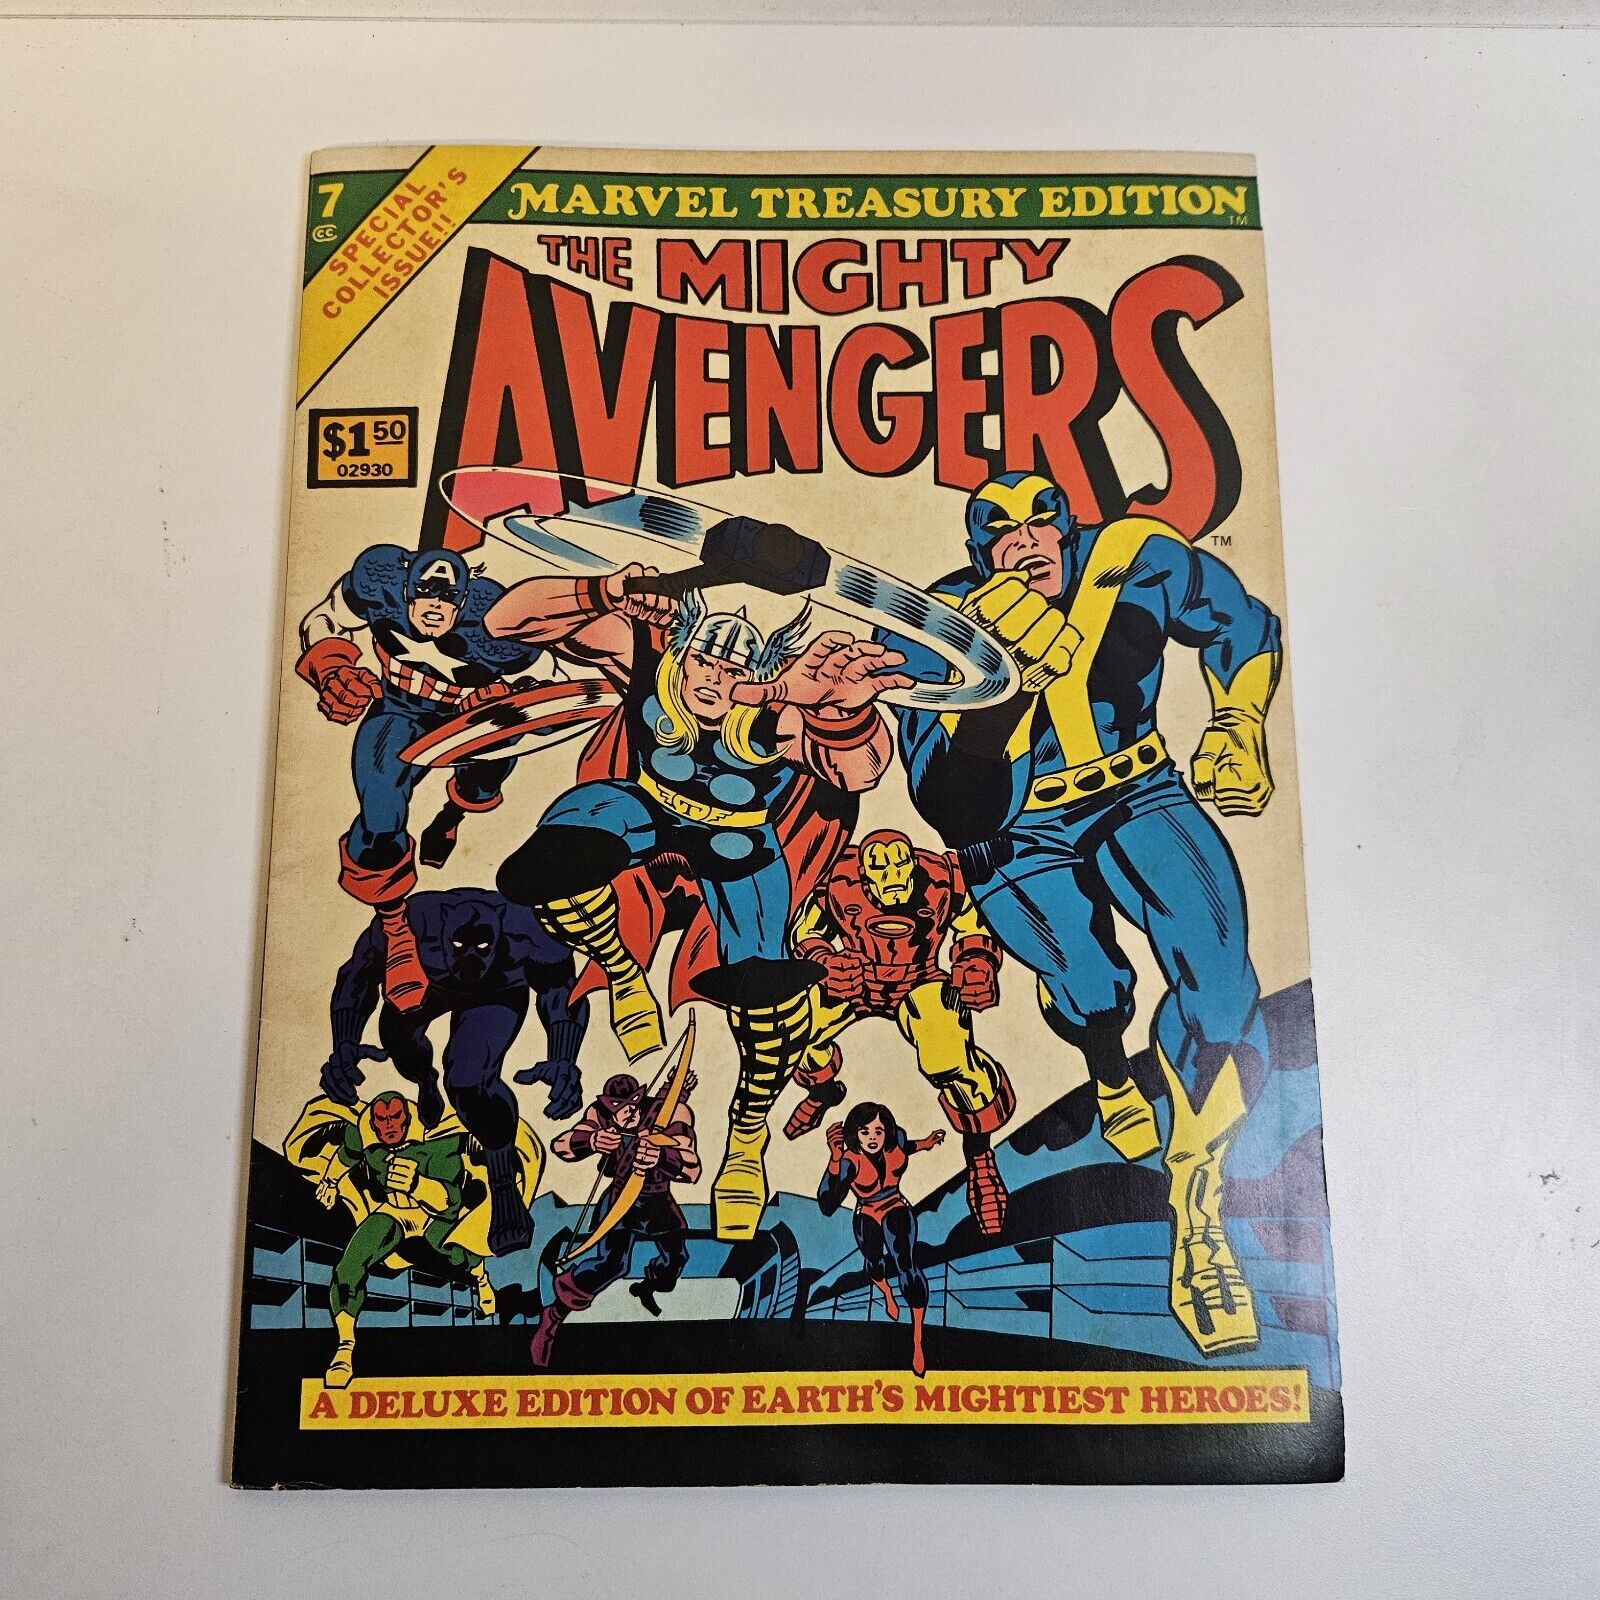 THE MIGHTY AVENGERS #7 1975 Marvel Treasury Edition 